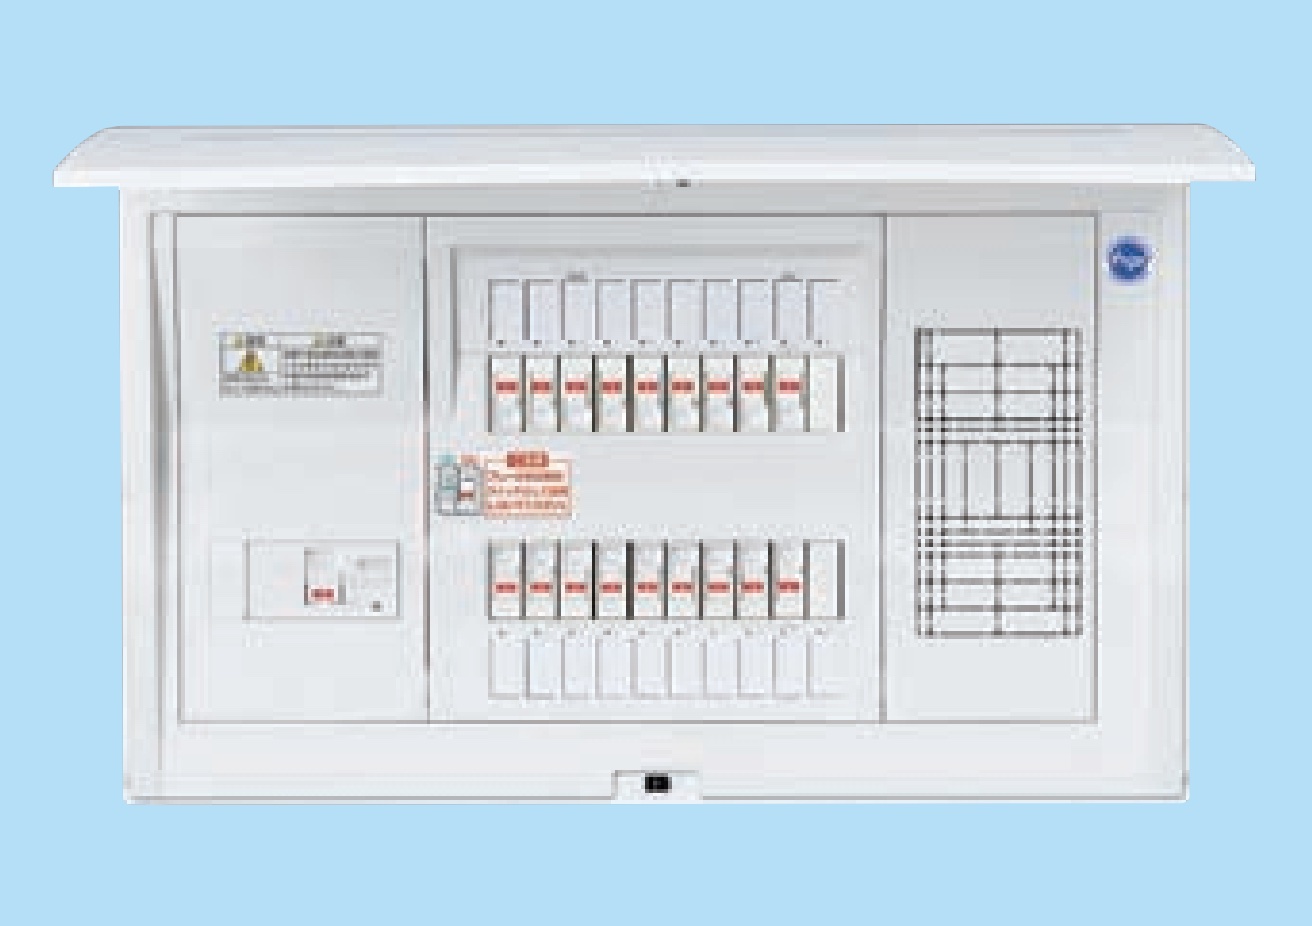 SALE開催中 パナソニック Panasonic 住宅分電盤 スマートコスモレディ型 スタンダード リミッタースペースなし標準タイプ  回路数10+1 主幹容量60ABHR86101